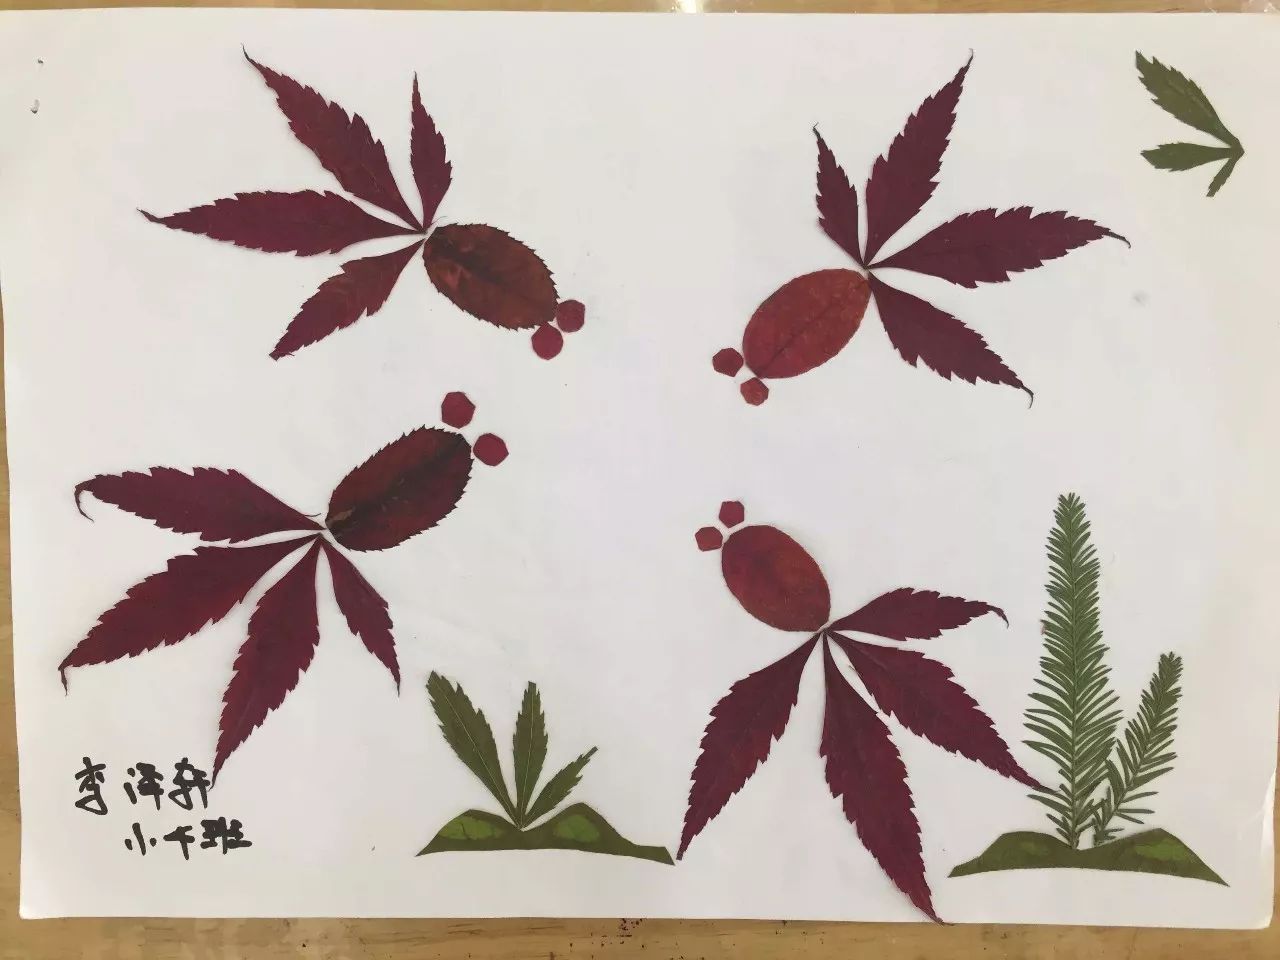 多彩的秋天——城南办事处中心园小班孩子制作树叶粘贴画